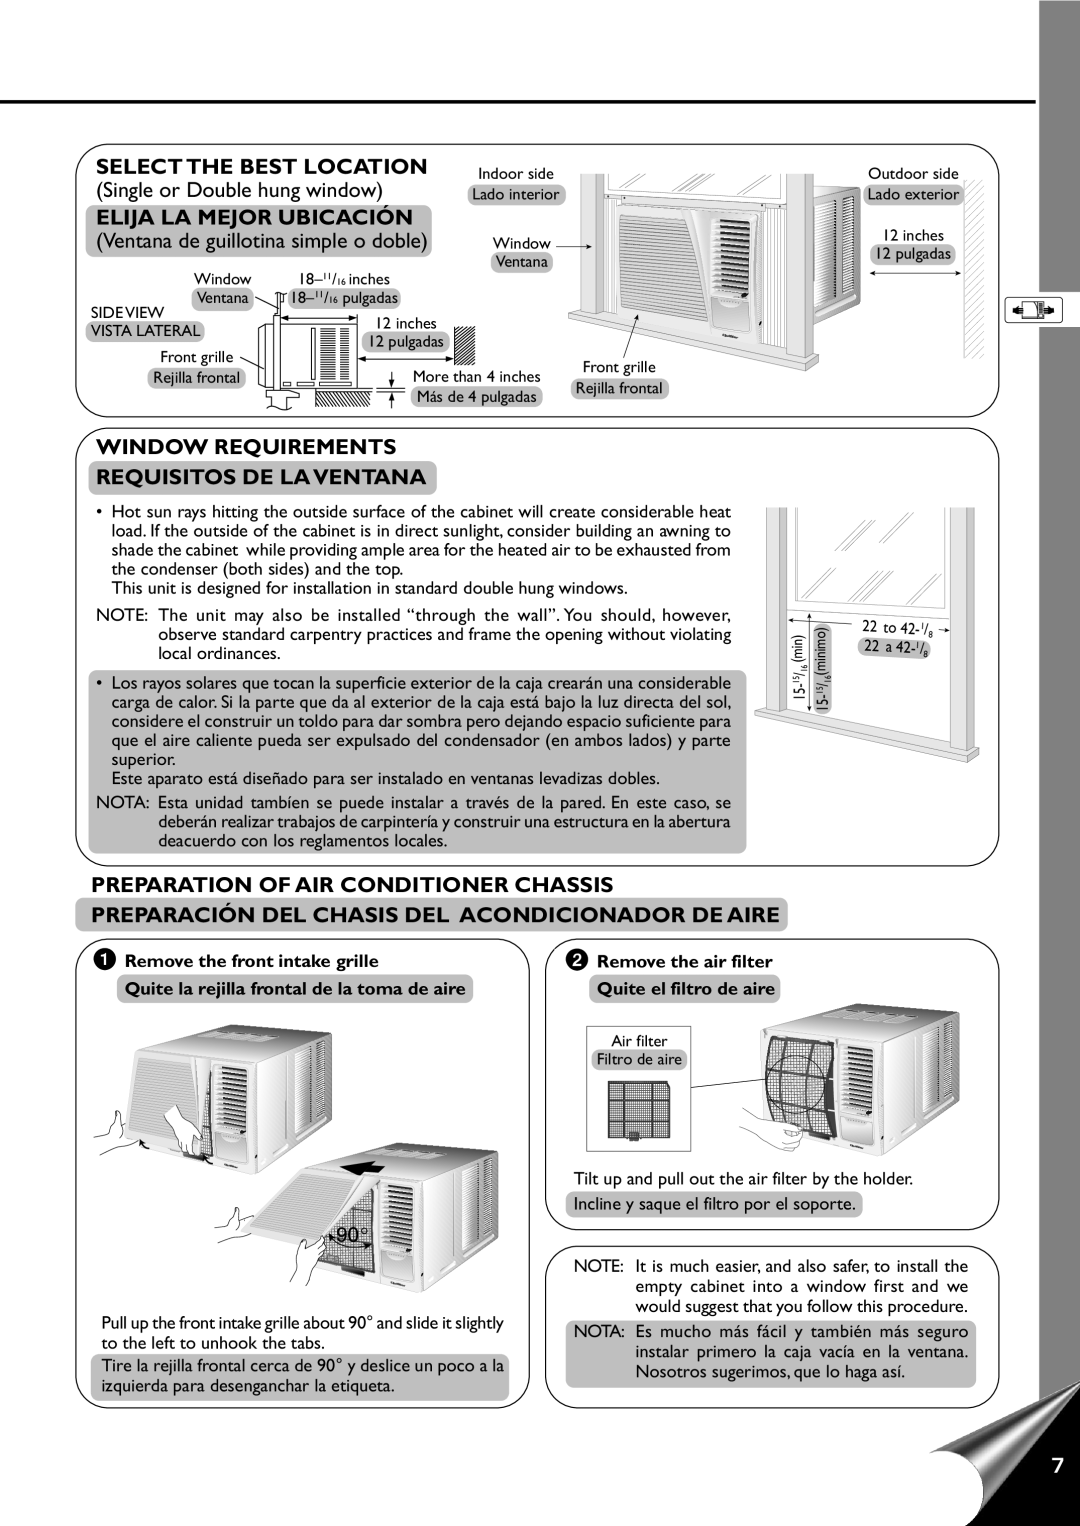 Quasar HQ-2121RH manual Select The Best Location, Elija La Mejor Ubicación, Window Requirements Requisitos De La Ventana 